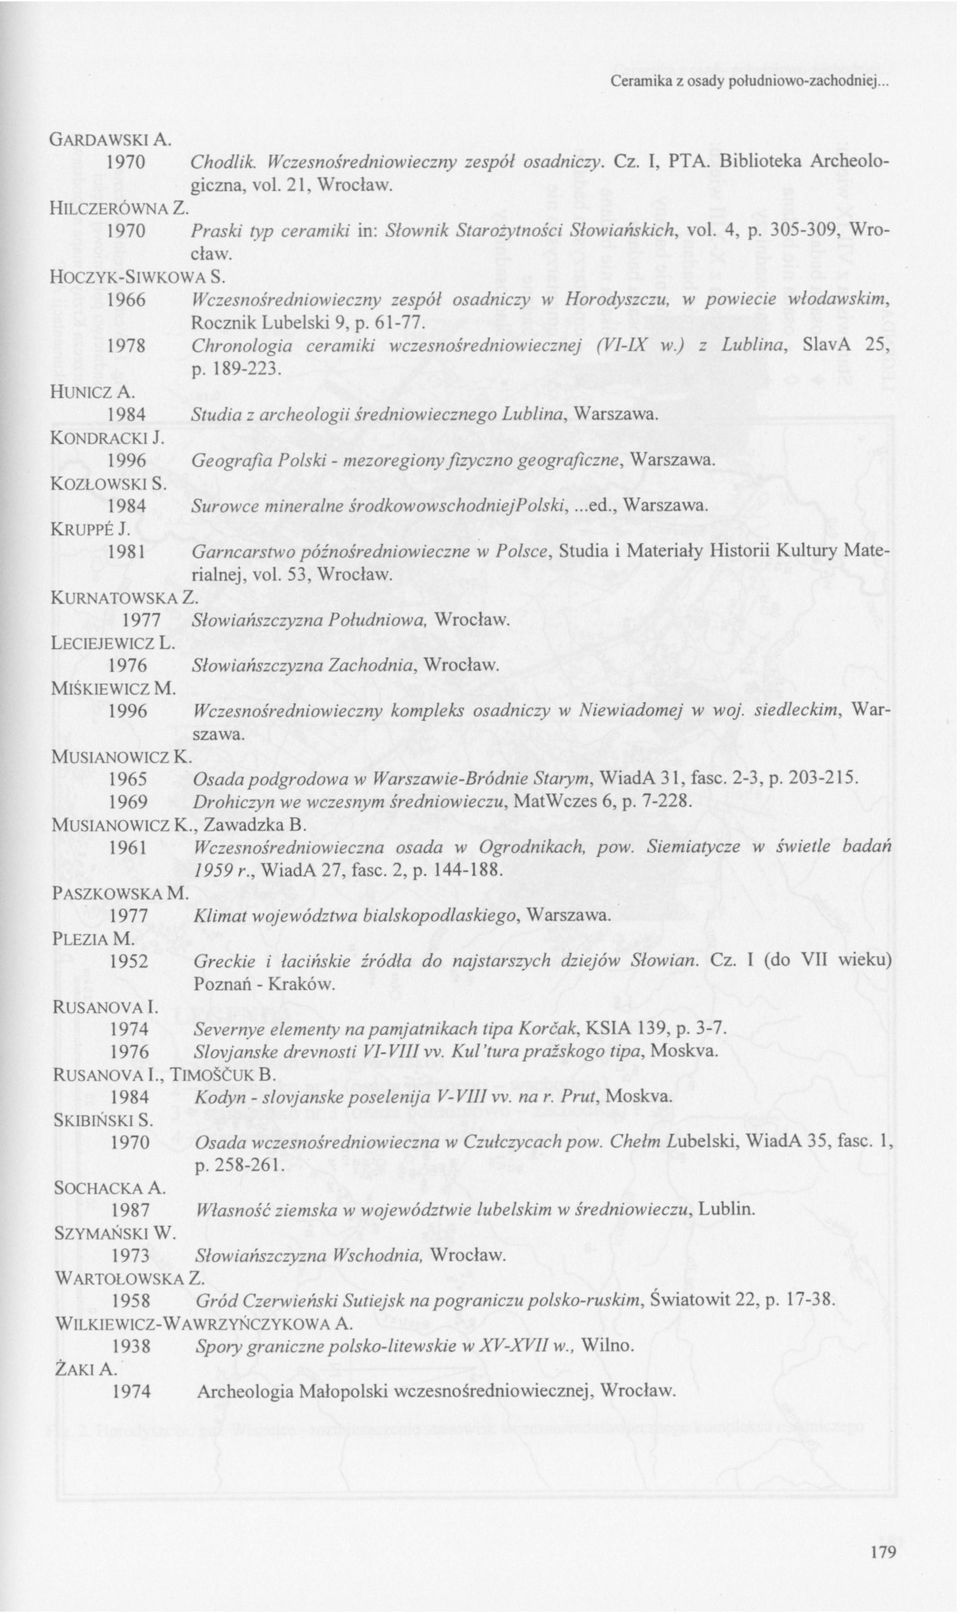 1966 Wczesnośredniowieczny zespół osadniczy w Horodyszczu, w powiecie włodawskim, Rocznik Lubelski 9, p. 61-77. 1978 Chronologia ceramiki wczesnośredniowiecznej (VI-IX w.) z Lublina, SlavA 25, p.